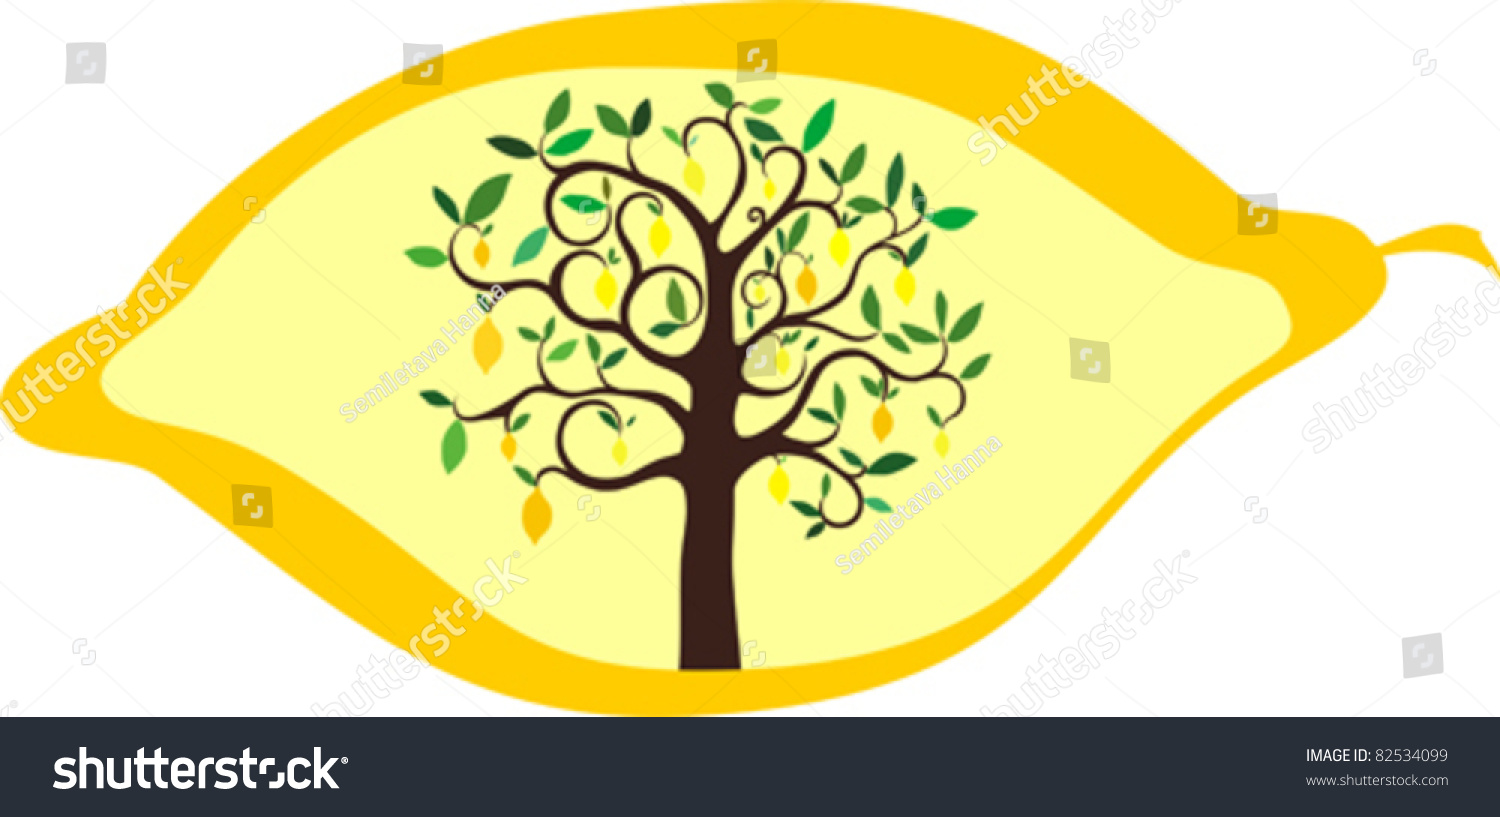 Vector Lemon Tree In Lemon On White Background - 82534099 : Shutterstock